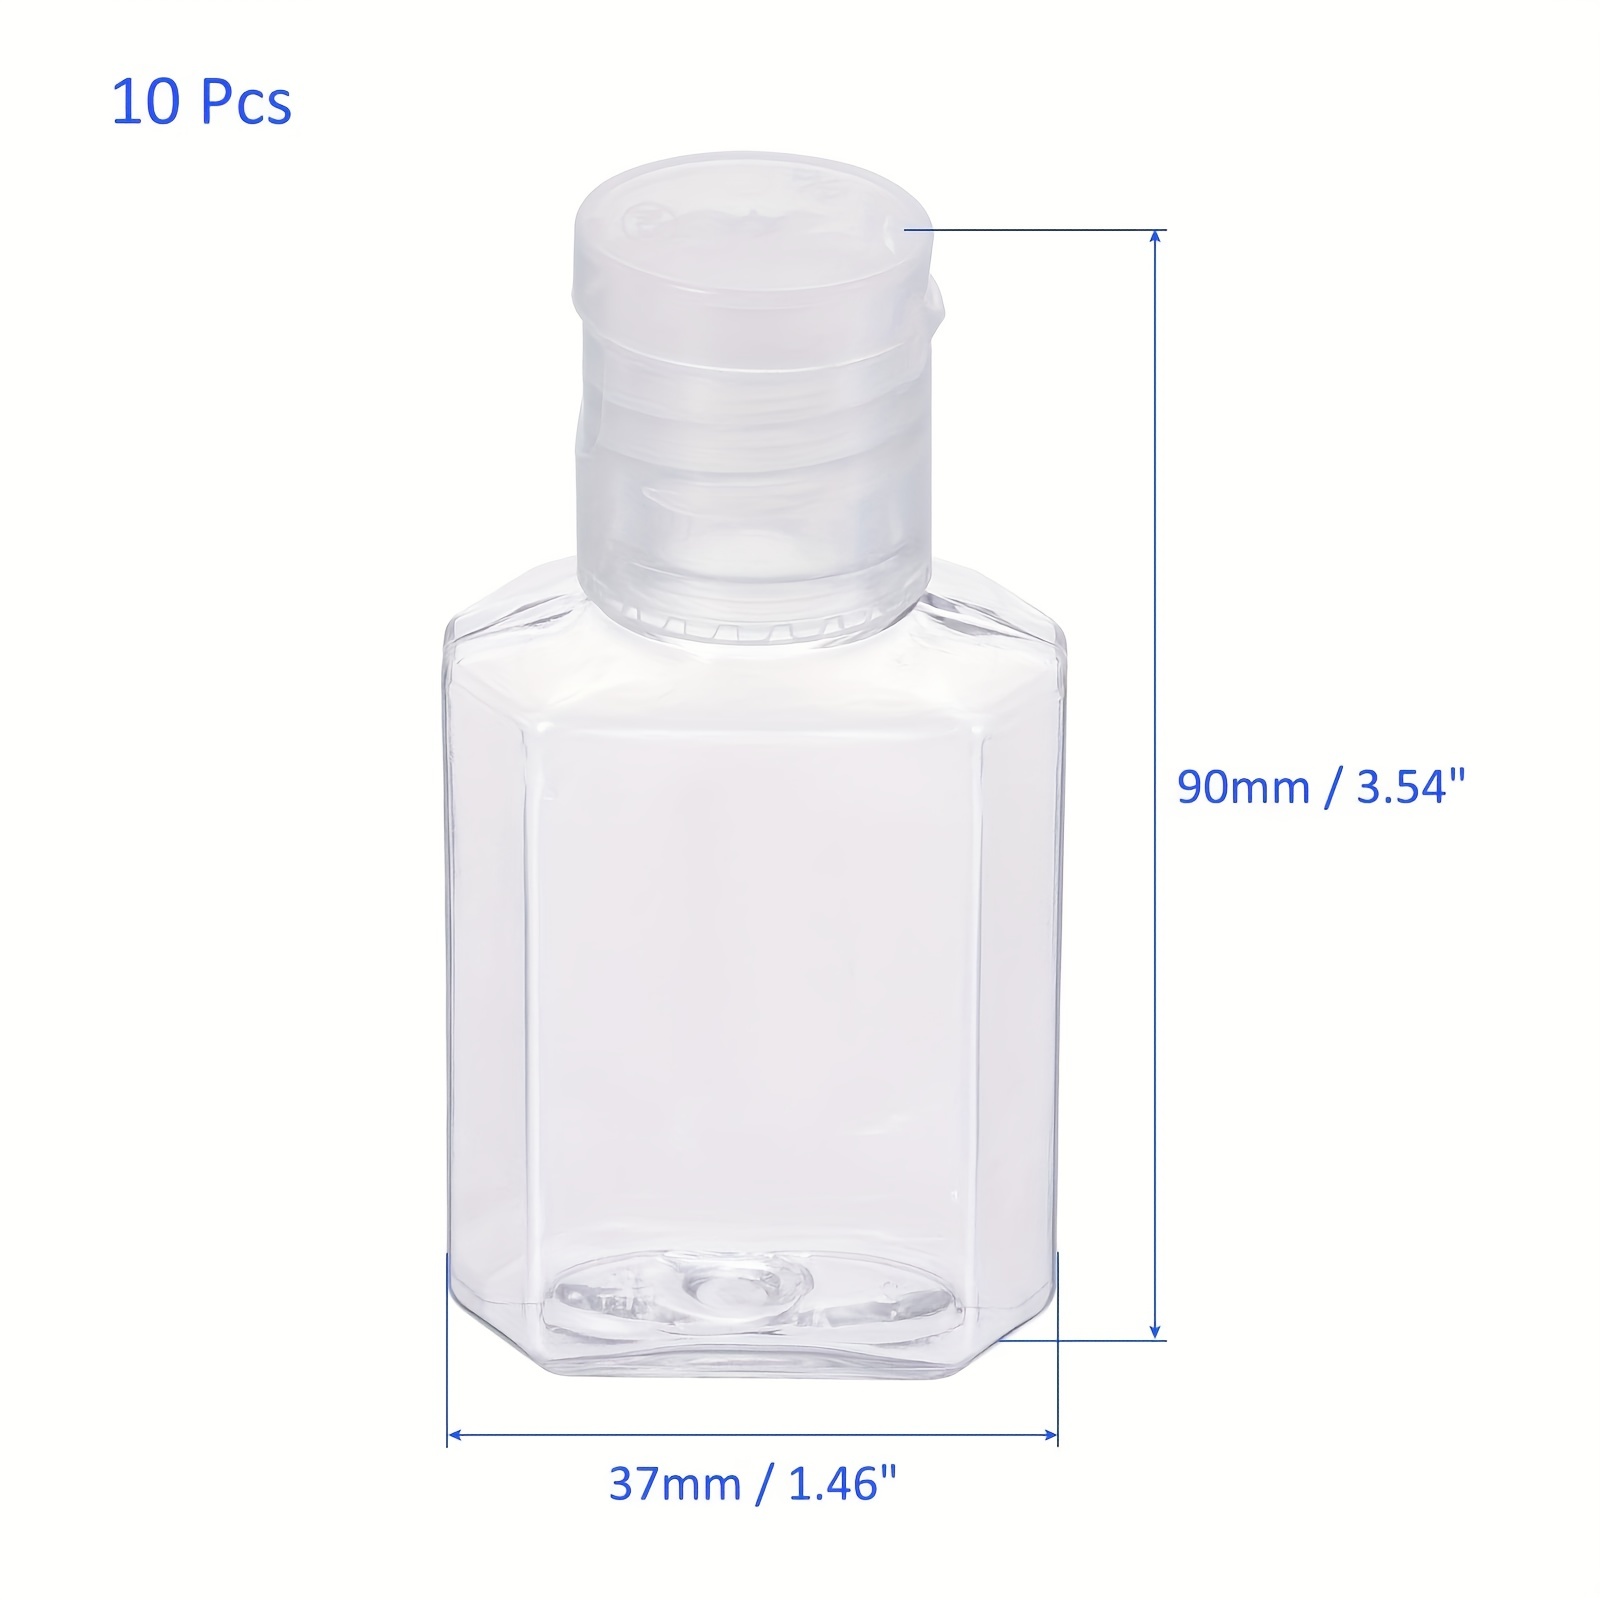 Paquete de 5 botellas vacías de plástico transparente de 3.4 fl oz con tapa  abatible, botella de viaje TSA para artículos de tocador líquidos, champú